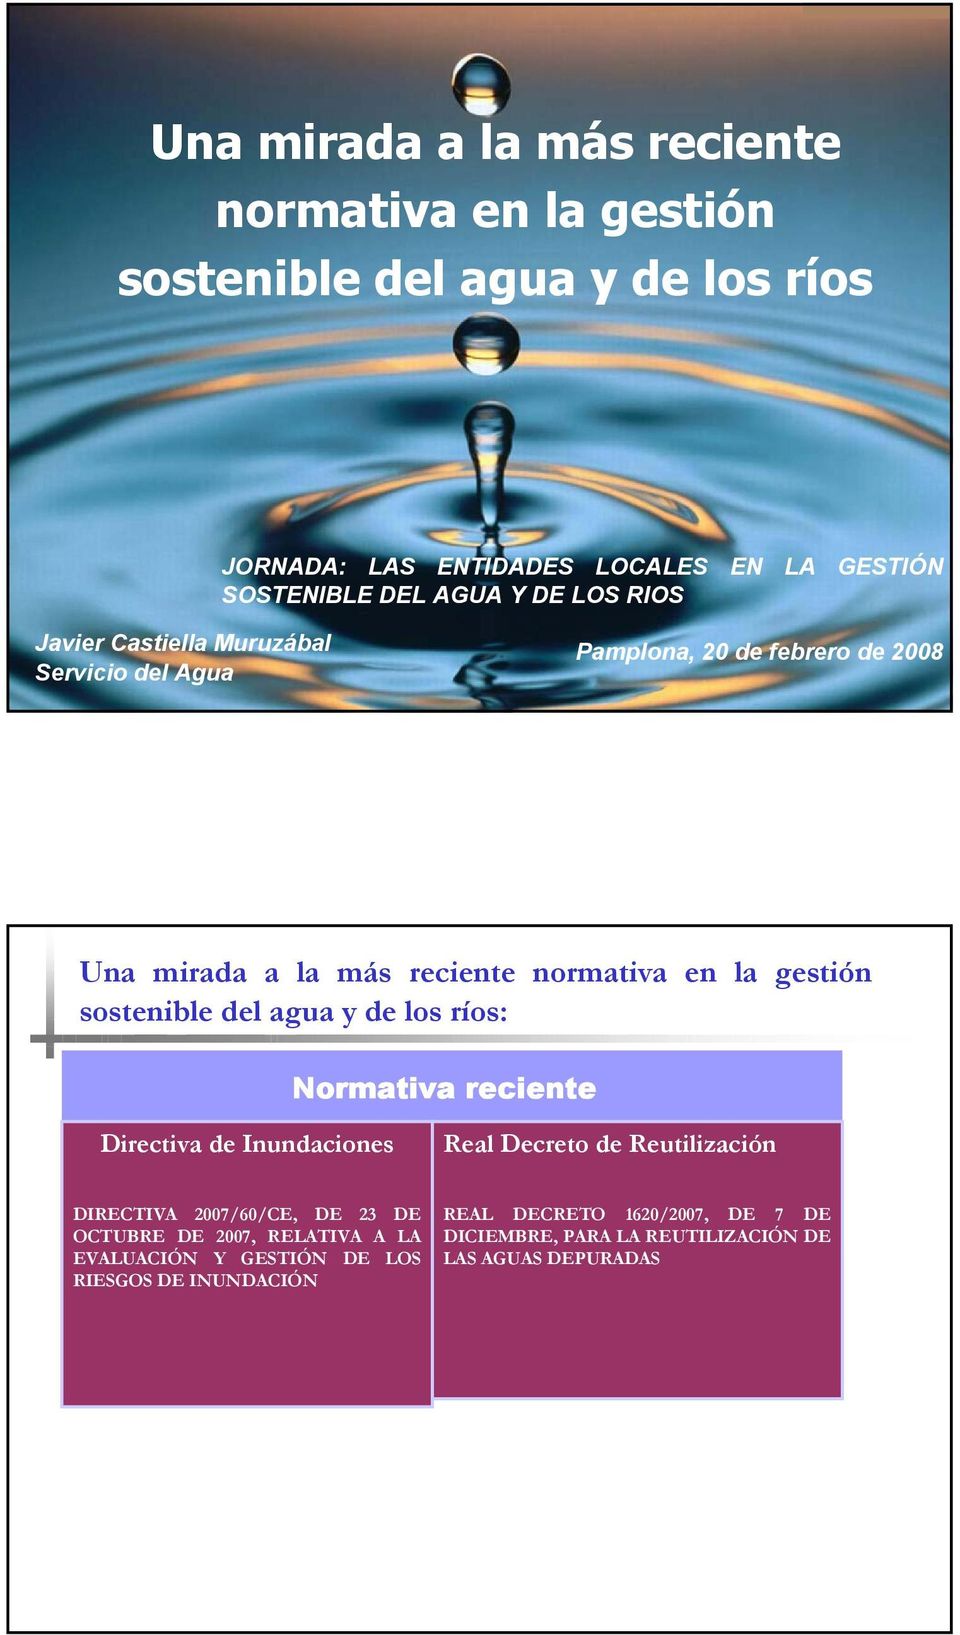 sostenible del agua y de los ríos: Normativa reciente Directiva de Inundaciones Real Decreto de Reutilización DIRECTIVA 2007/60/CE, DE 23 DE OCTUBRE DE